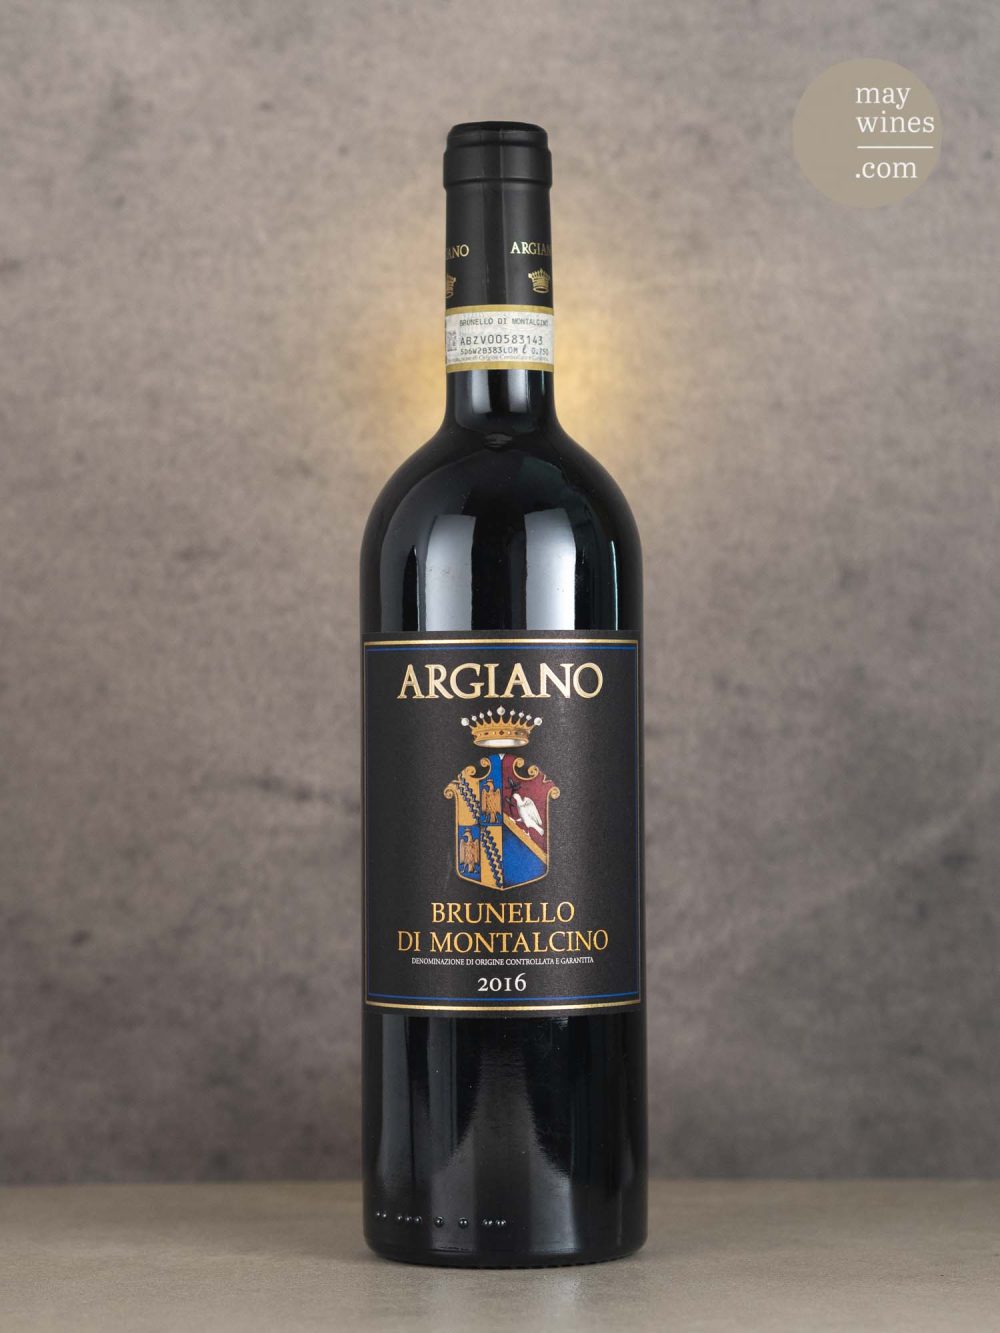 May Wines – Rotwein – 2016 Brunello di Montalcino - Argiano